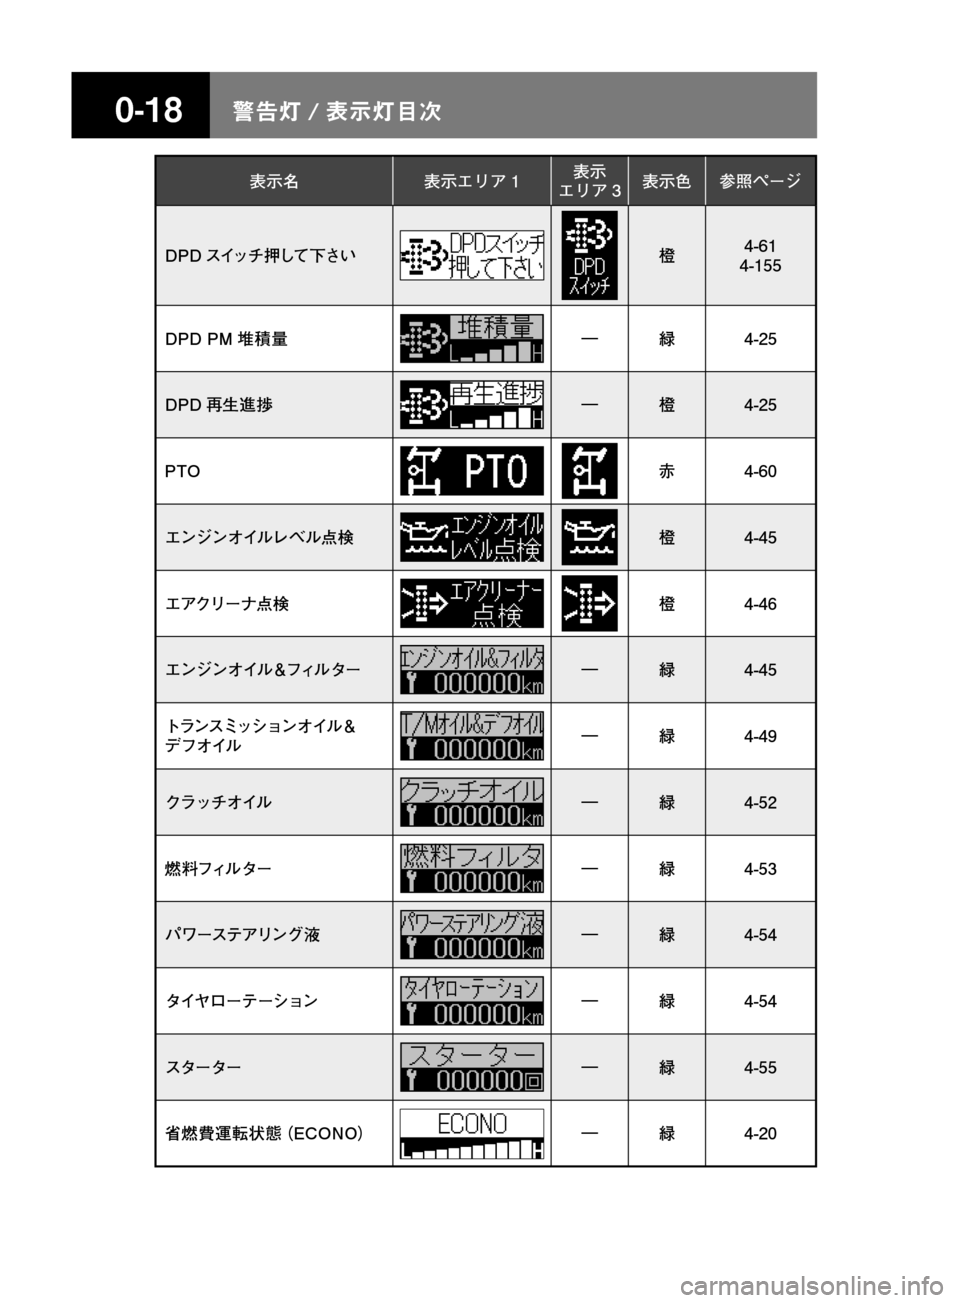 MAZDA MODEL TITAN 2013  タイタン｜取扱説明書 (in Japanese) ����/n � 
